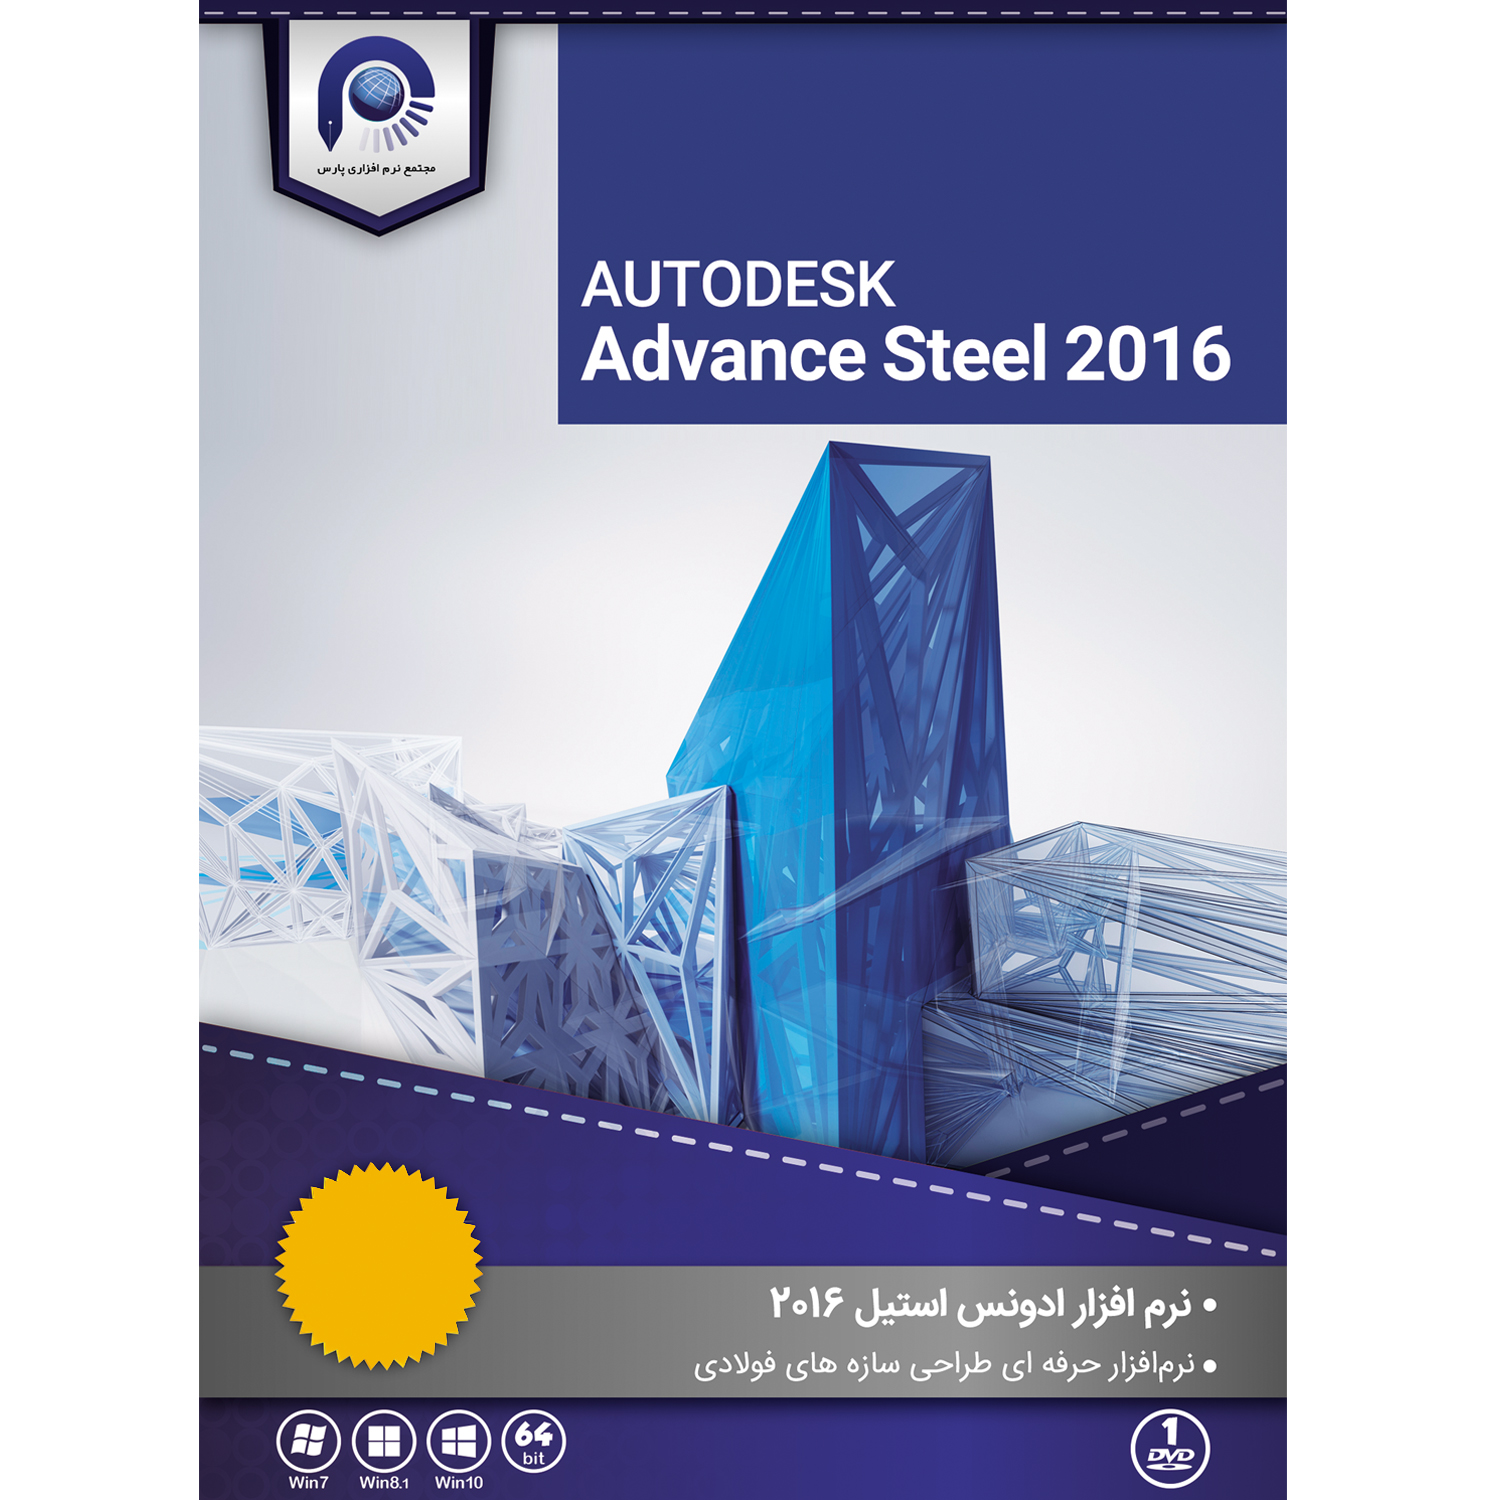 نرم افزار Autodesk Advance Steel نسخه 2016 نشر مجتمع نرم افزاری پارس